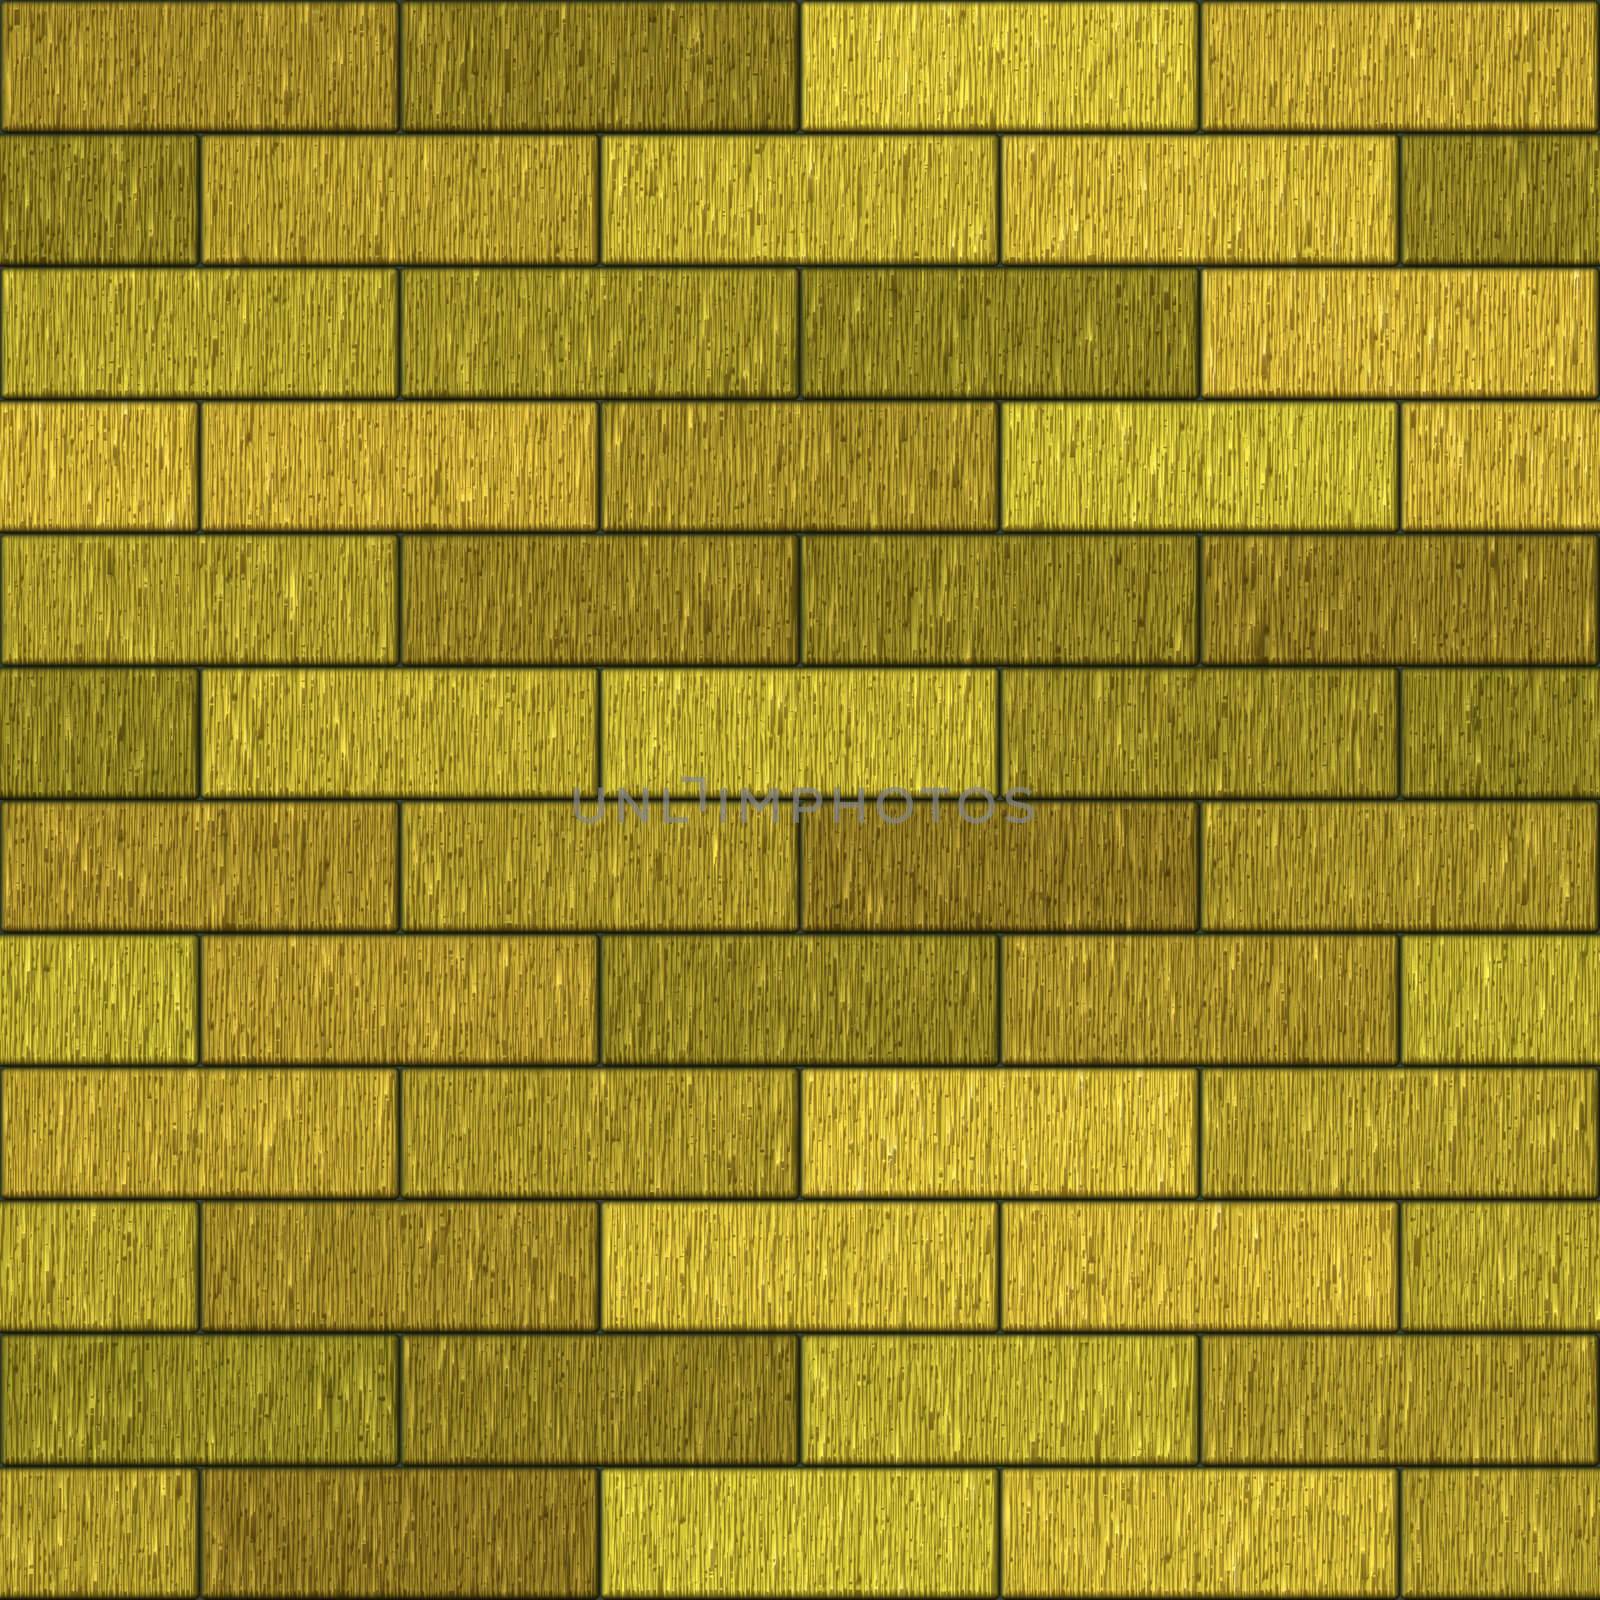 sl golden bricks by hospitalera